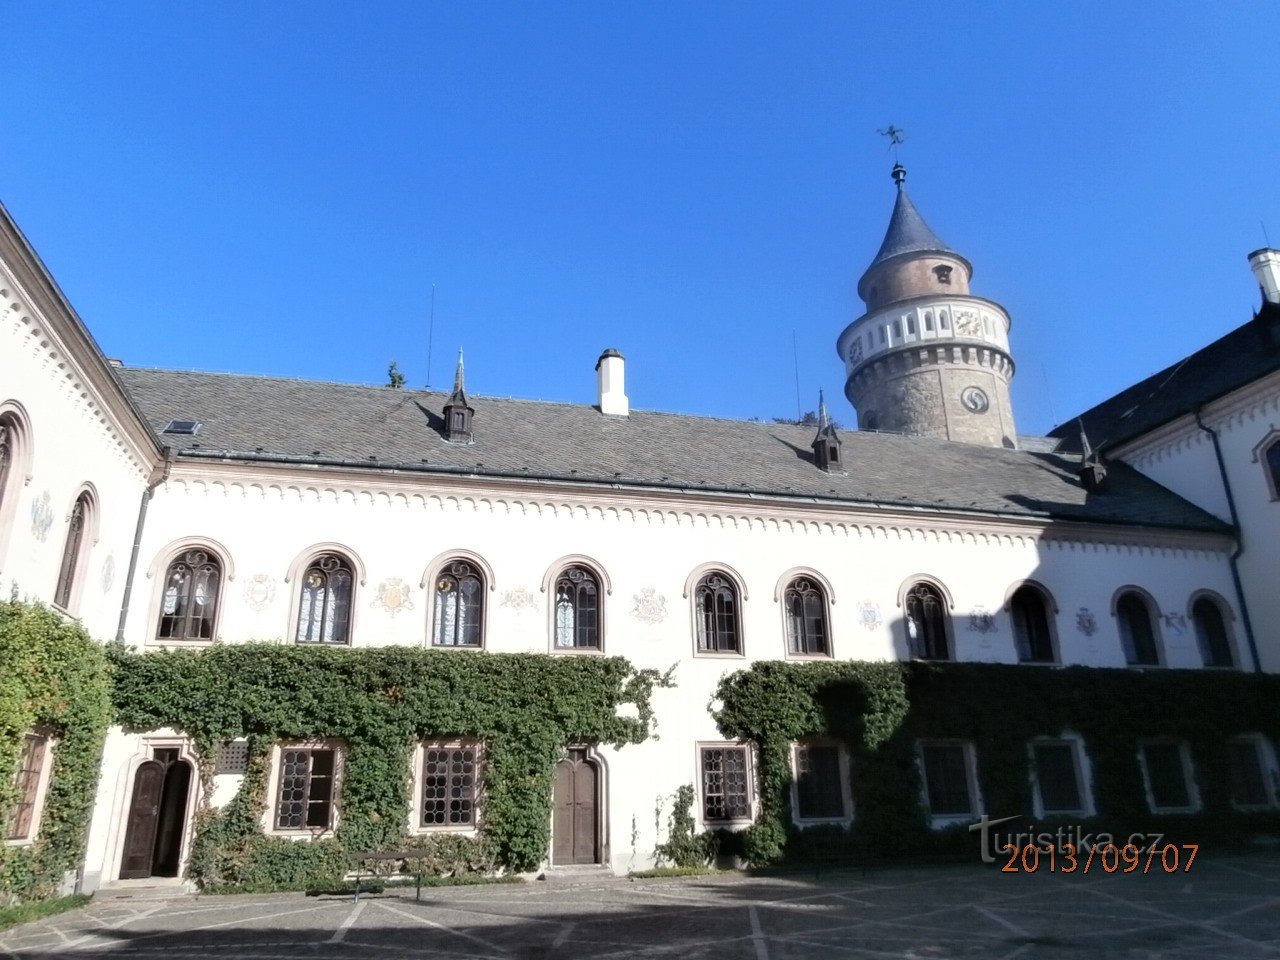 Romantisches Schloss Sychrov